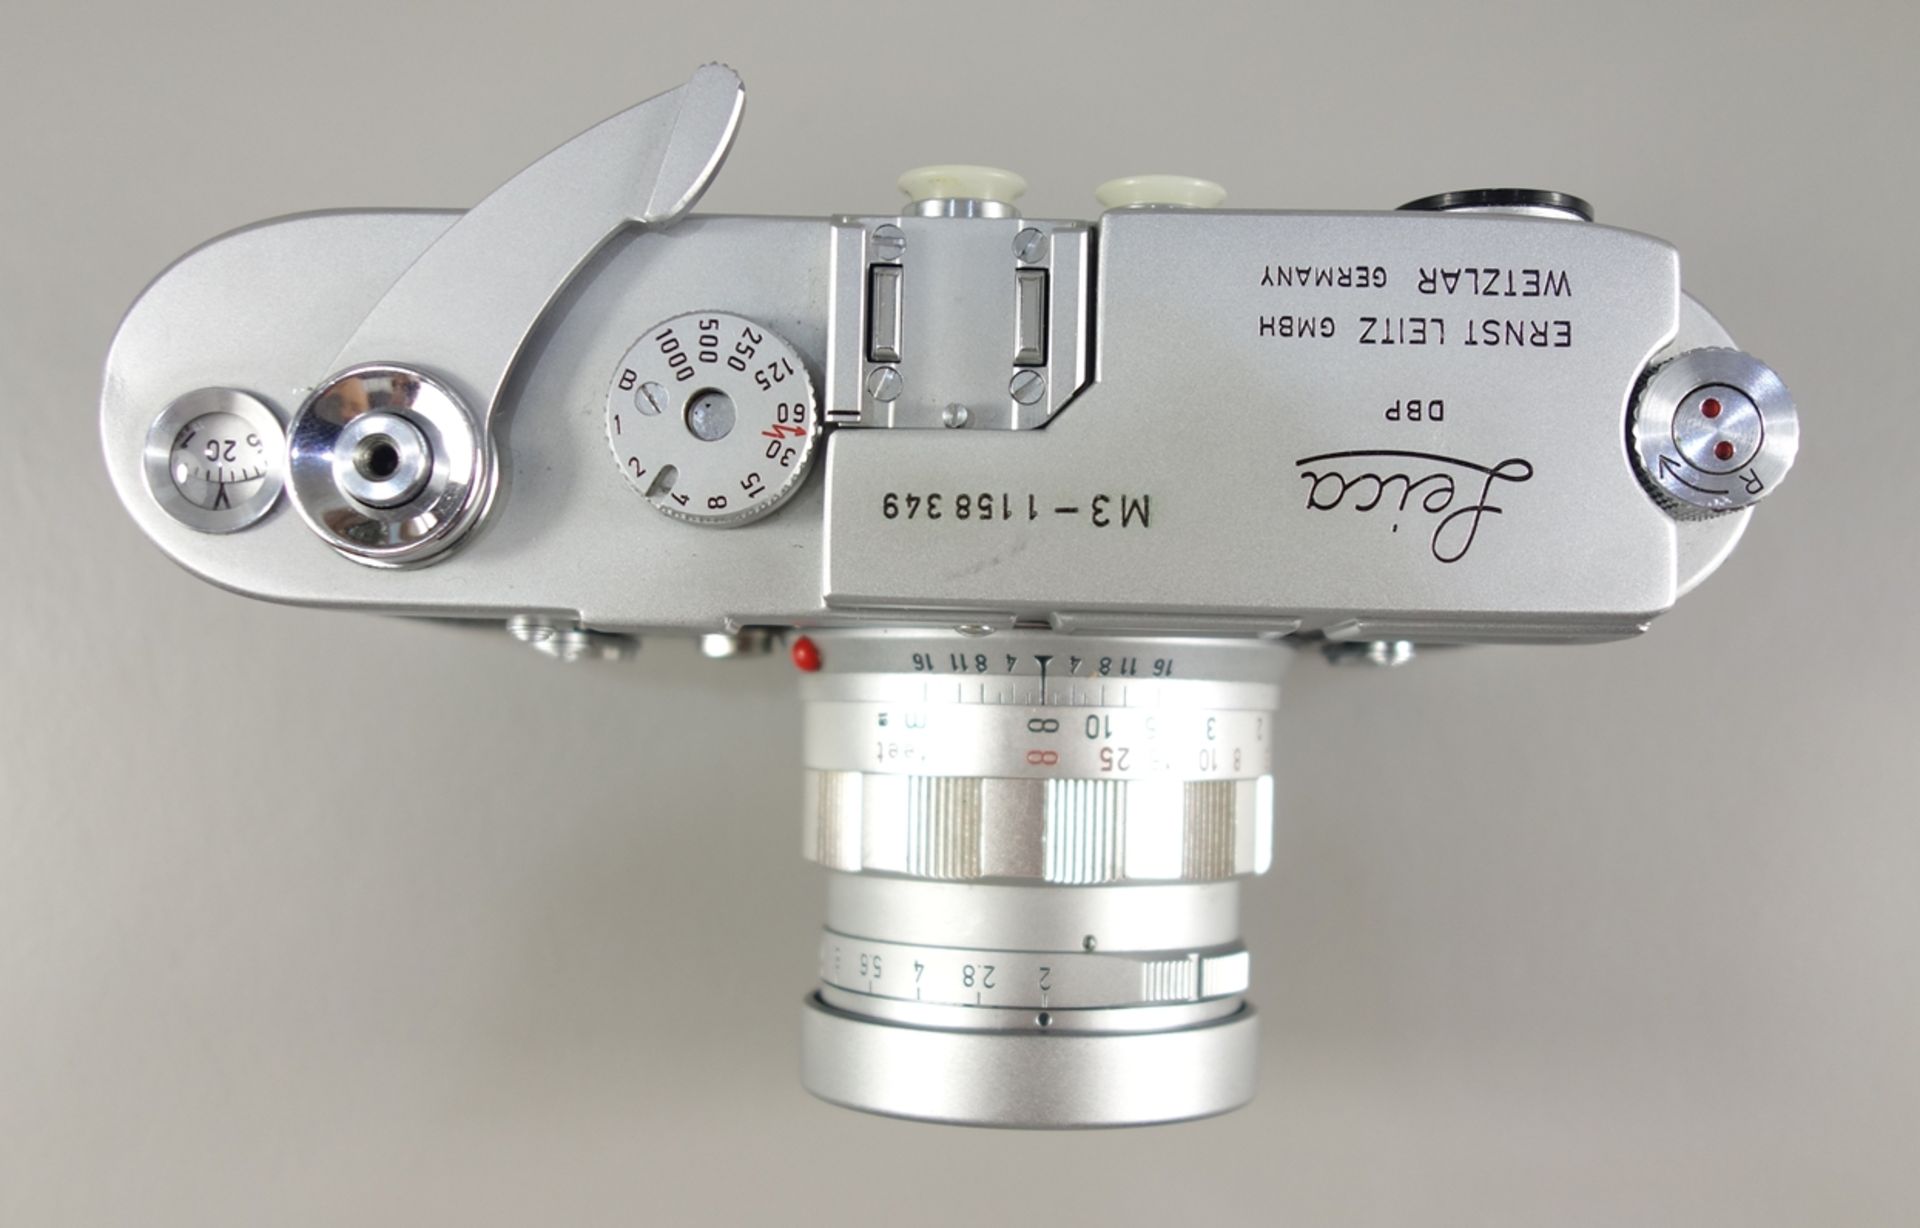 Leica M3, Messsucherkamera, Ernst Leitz Wetzlar, 1966, Serien-Nr. 1158349, mit Objektiv Leitz - Bild 3 aus 5